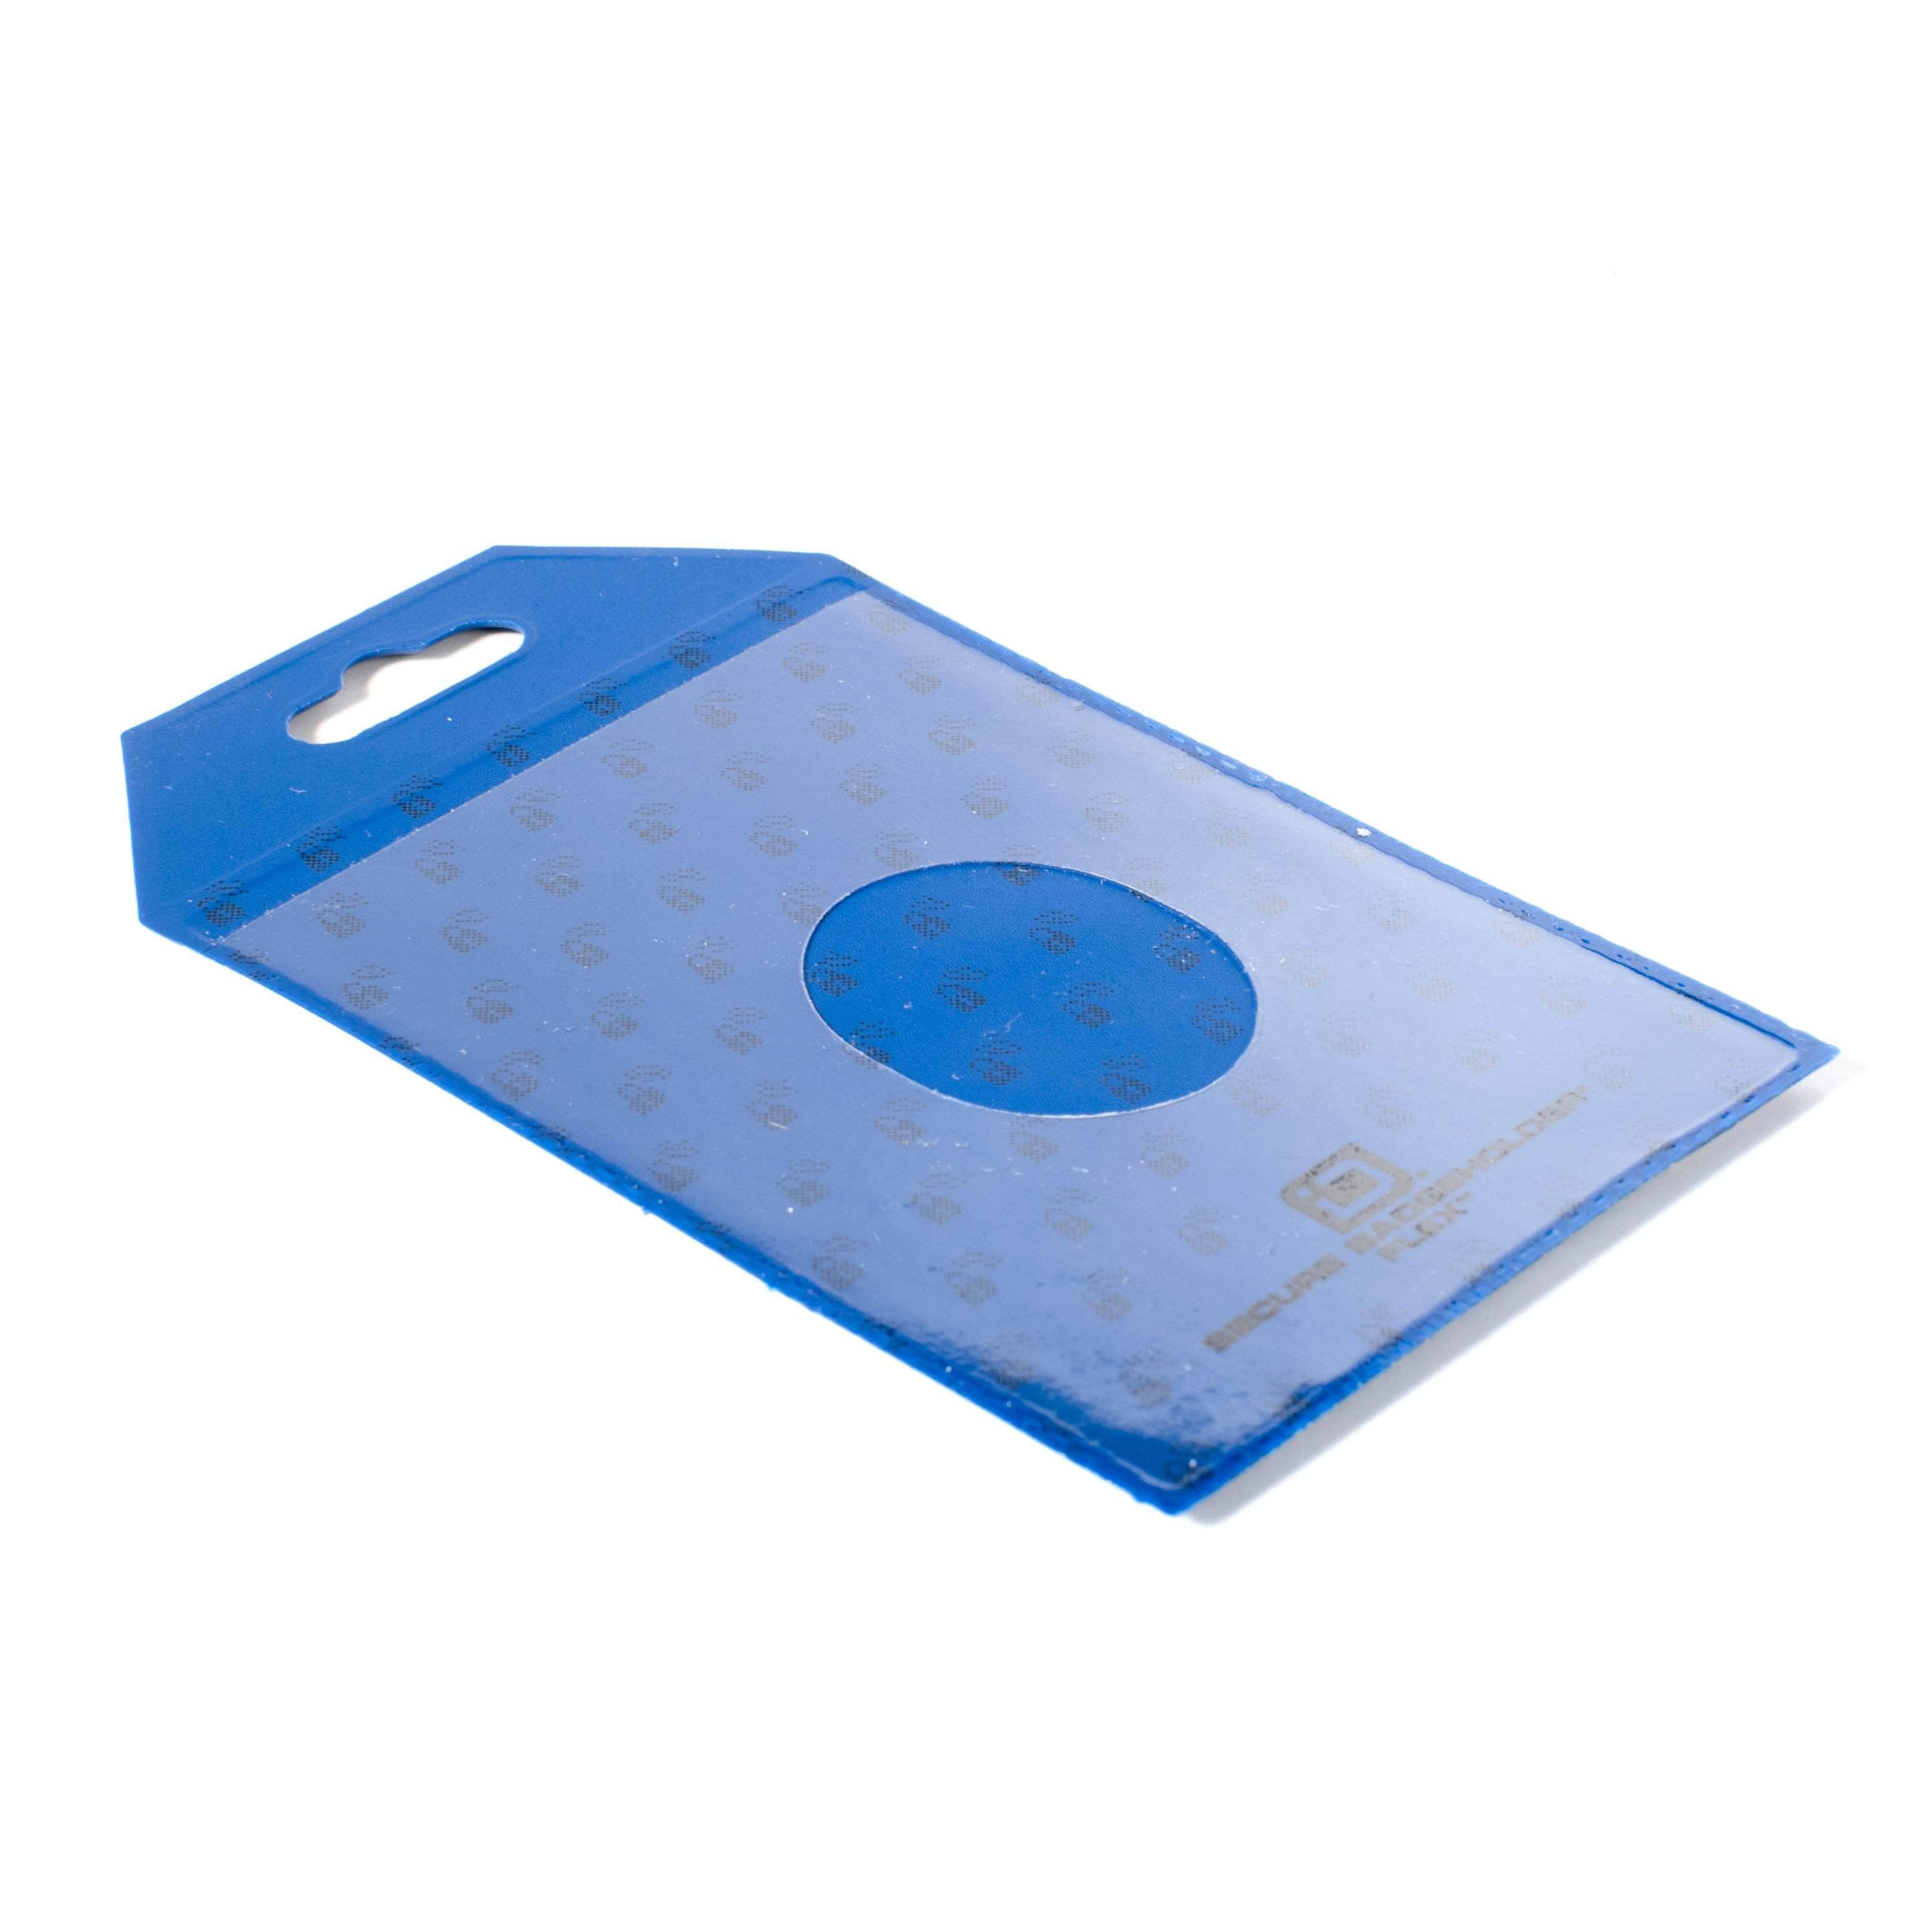 ID Stronghold Badgeholder Secure Badge Holder Flex Vertical 2 Card Holder